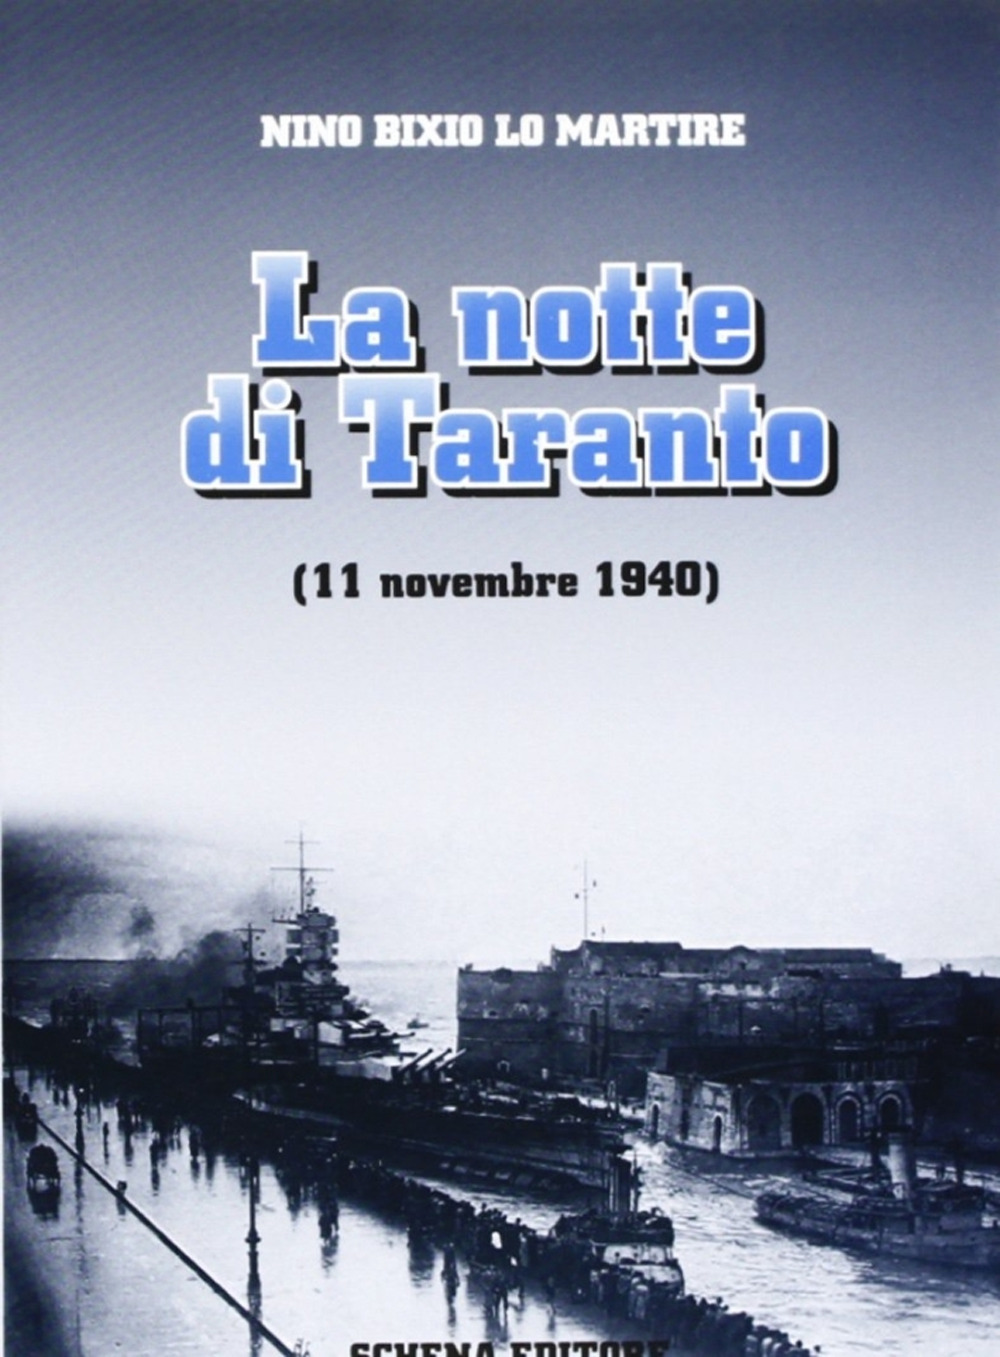 La notte di Taranto (11 novembre 1940)